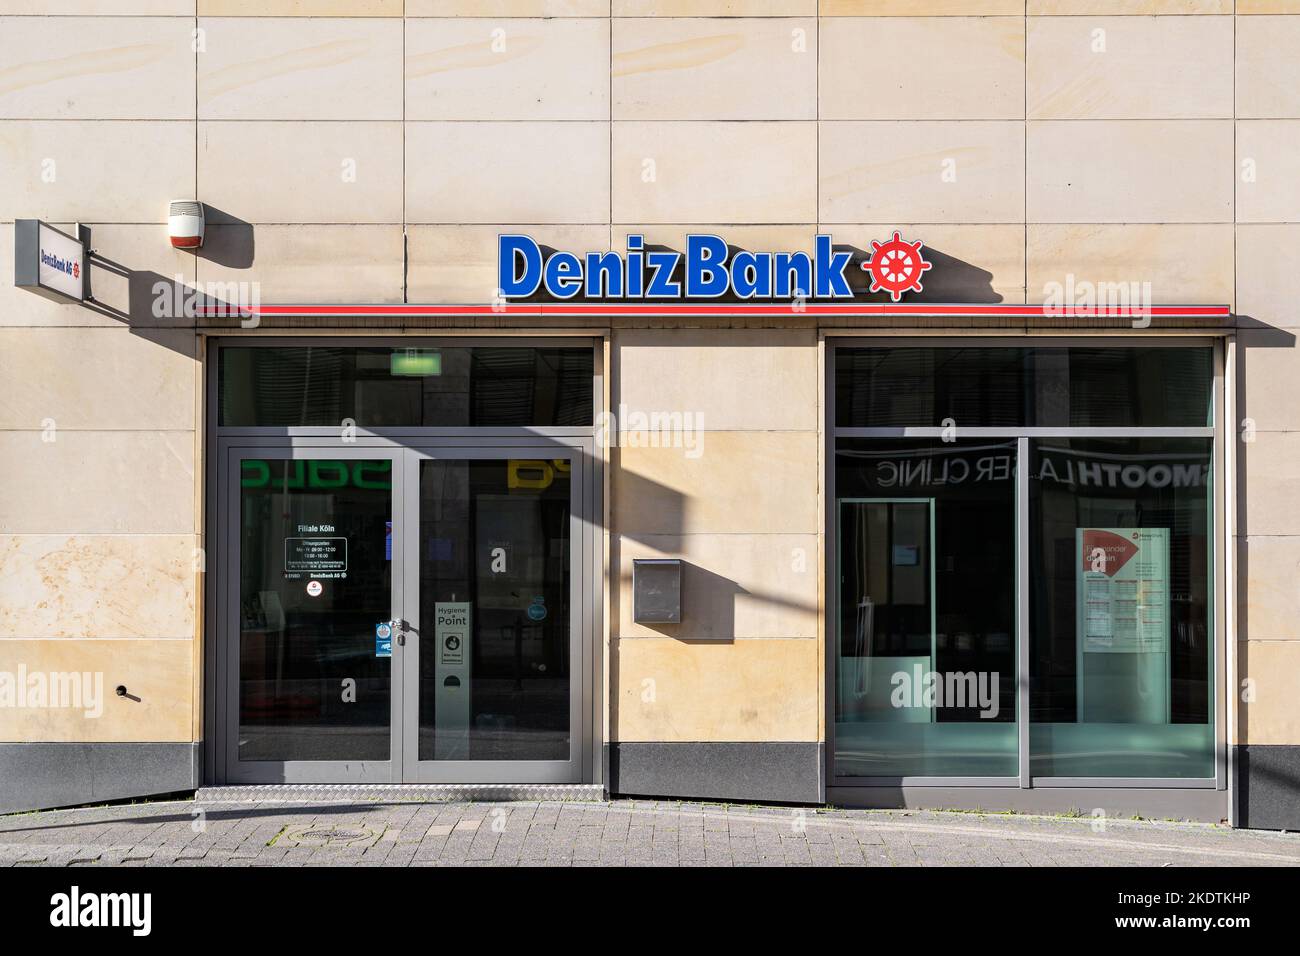 DenizBank branch in Cologne, Germany Stock Photo